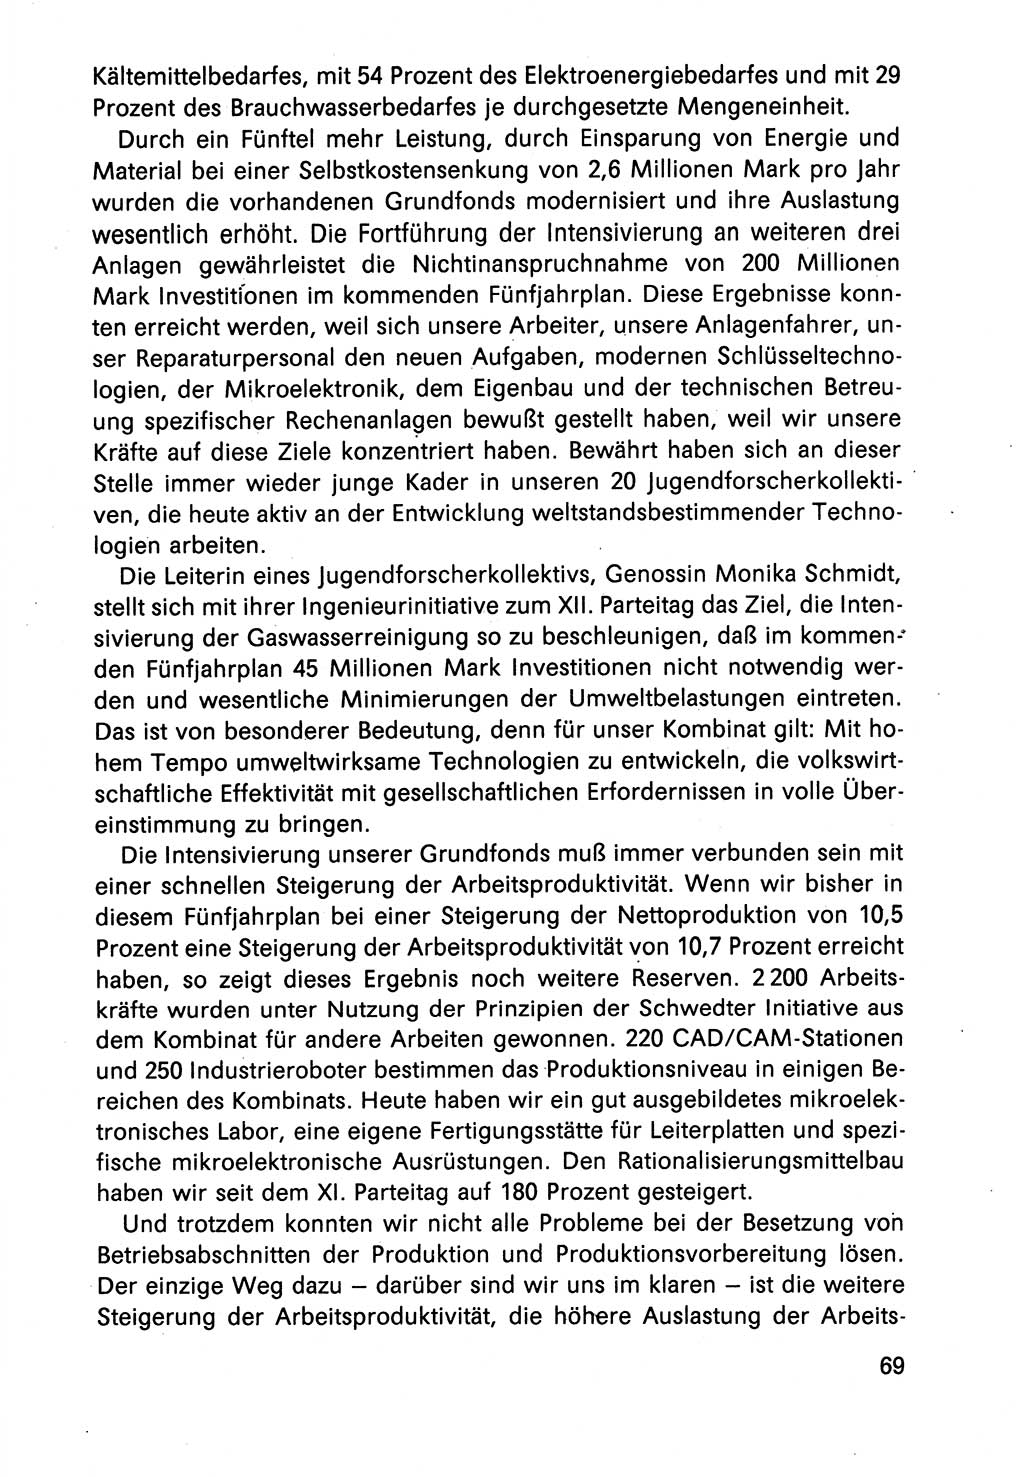 Diskussionsreden, 8. Tagung des ZK (Zentralkomitee) der SED (Sozialistische Einheitspartei Deutschlands) [Deutsche Demokratische Republik (DDR)] 1989, Seite 69 (Disk.-Red. 8. Tg. ZK SED DDR 1989, S. 69)